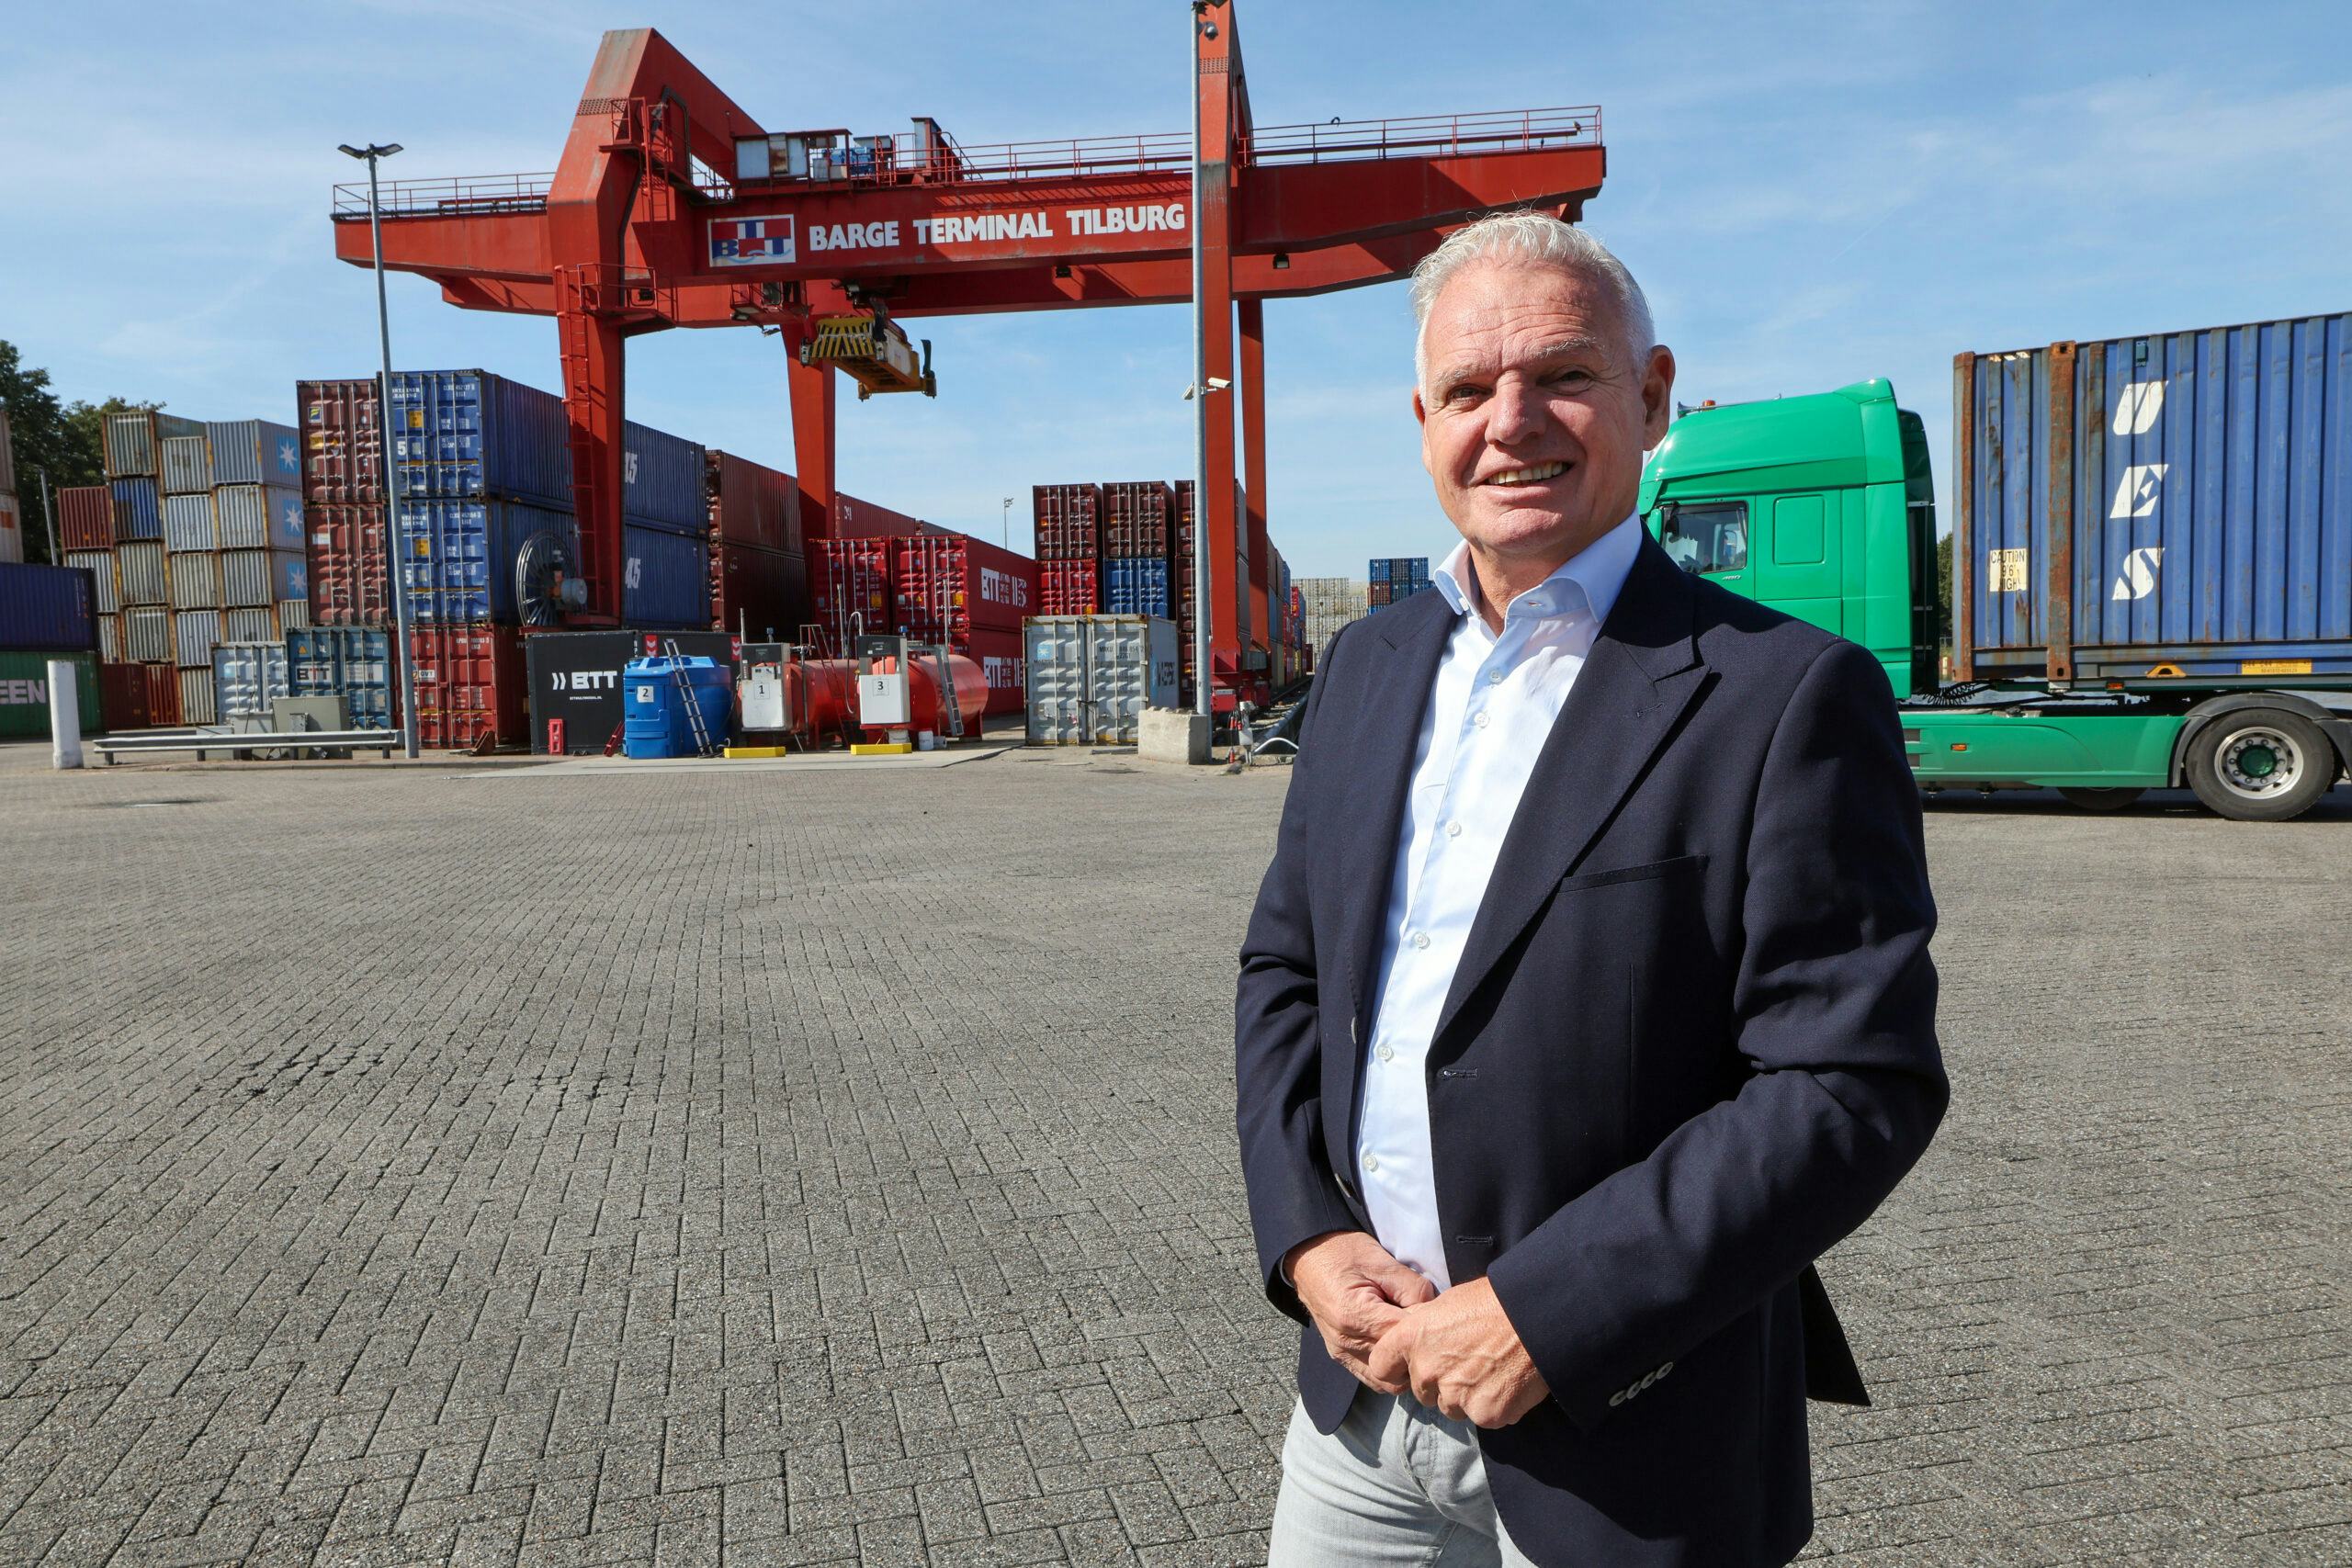 Wil Versteijnen over Tilburg-Waalwijk: 'Logistiek op de agenda houden' - IN DE REGIO [1]